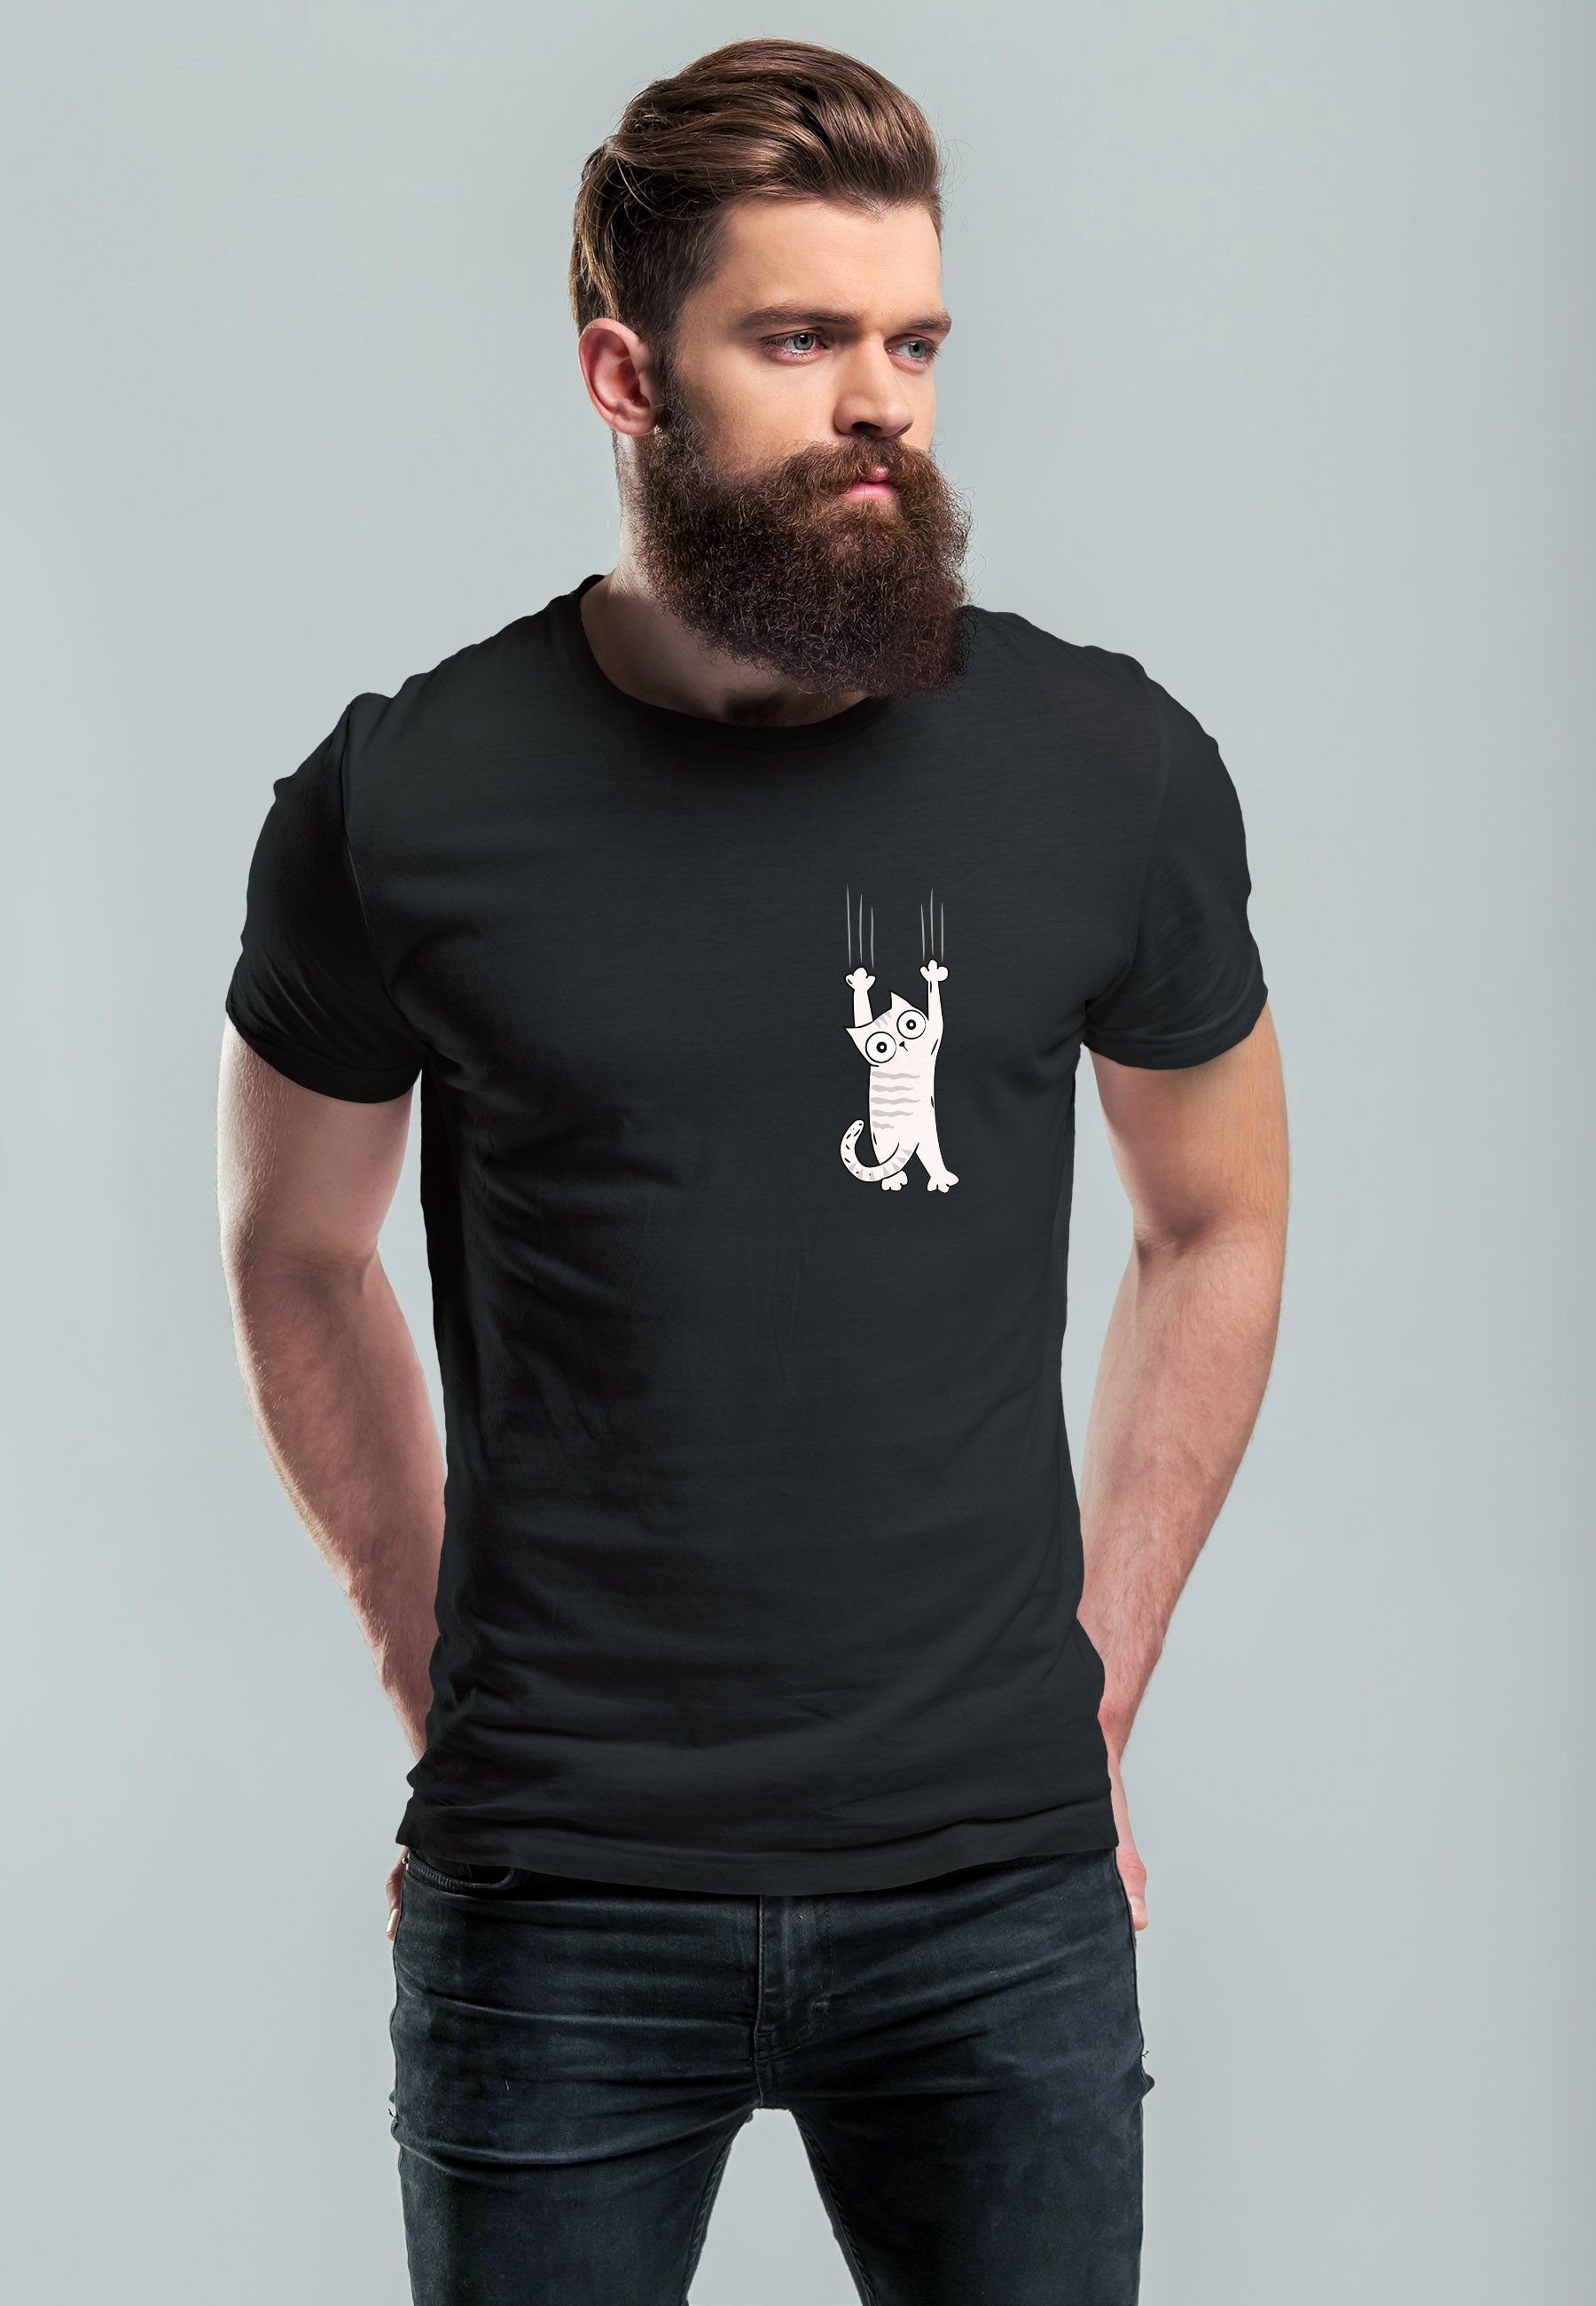 Neverless Print-Shirt schwarz Kapuzen-Pullover Print Männer Logo Cat T-Shirt Herren mit Aufdruck Katze lustig